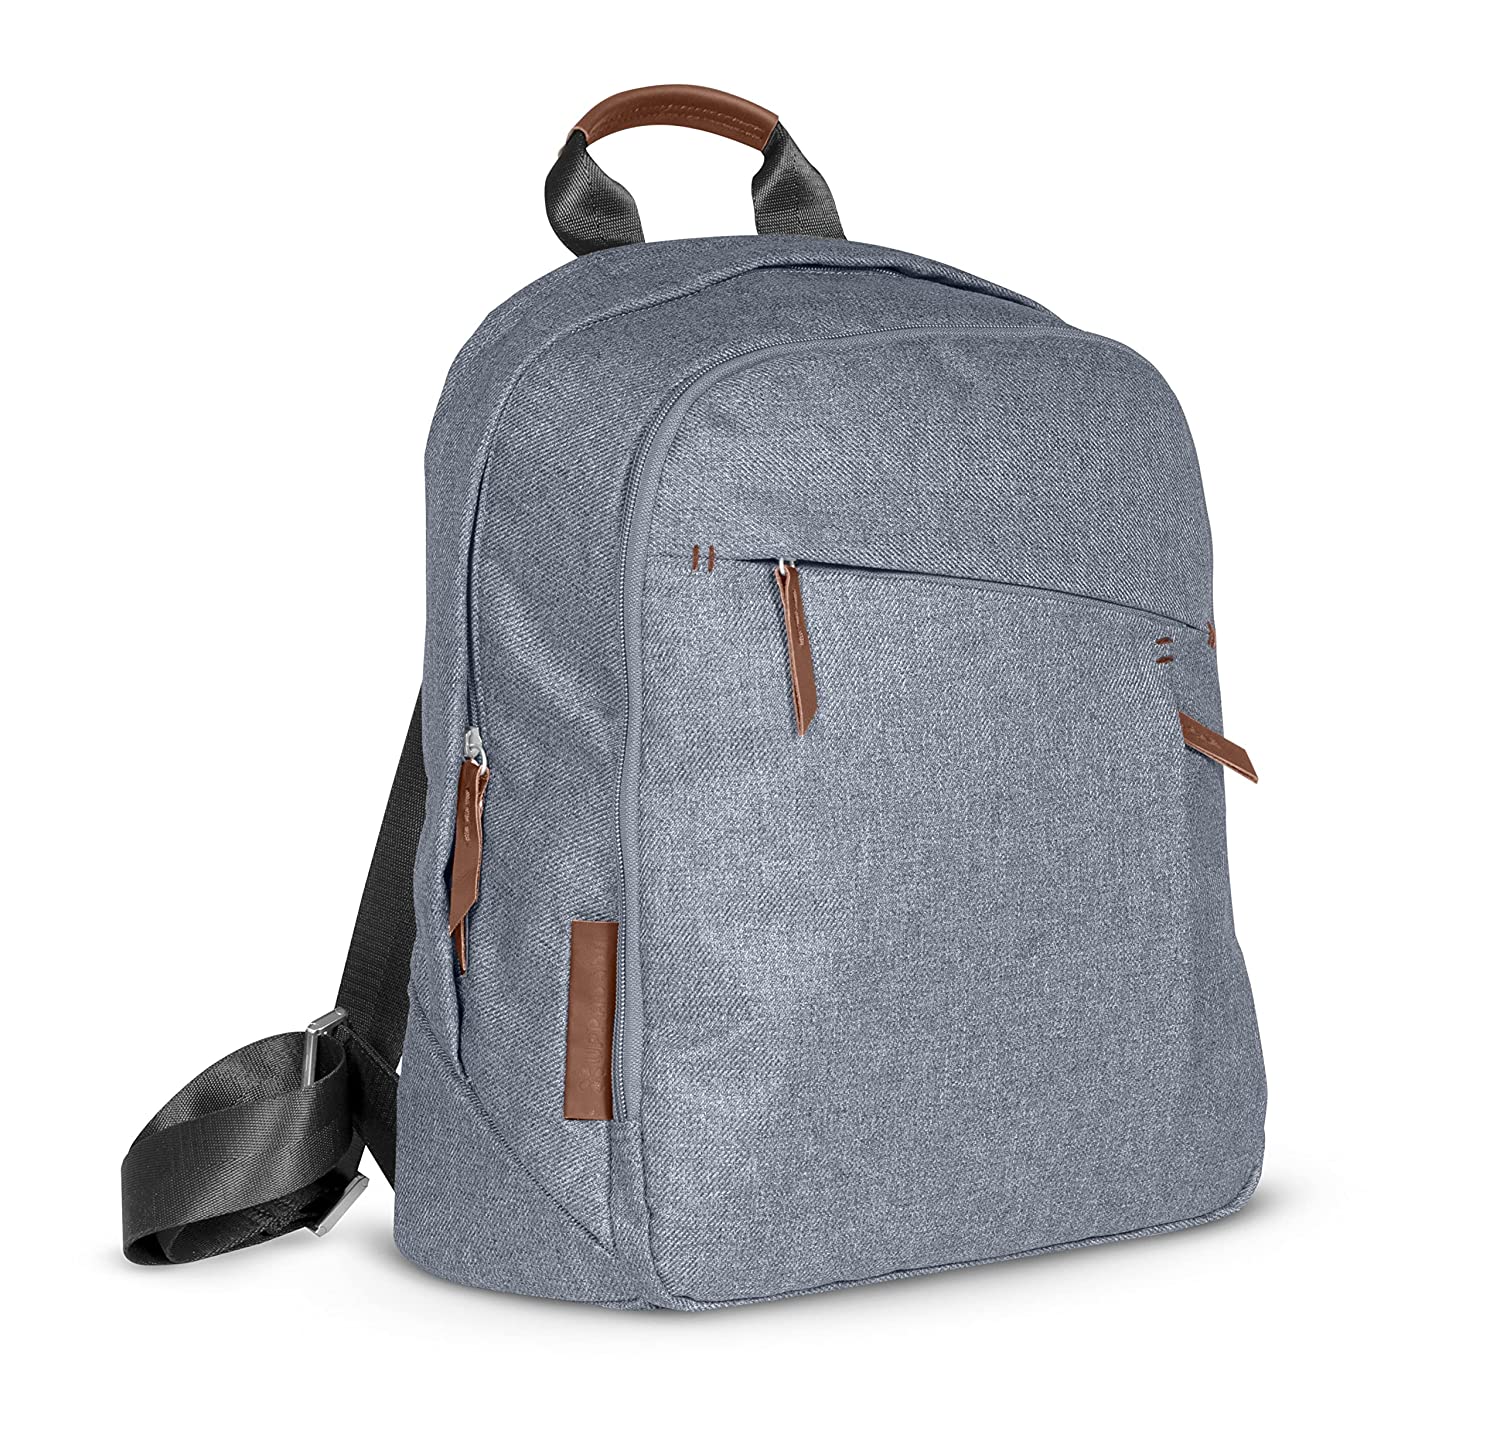 Uppa Change Backpack-Greyson